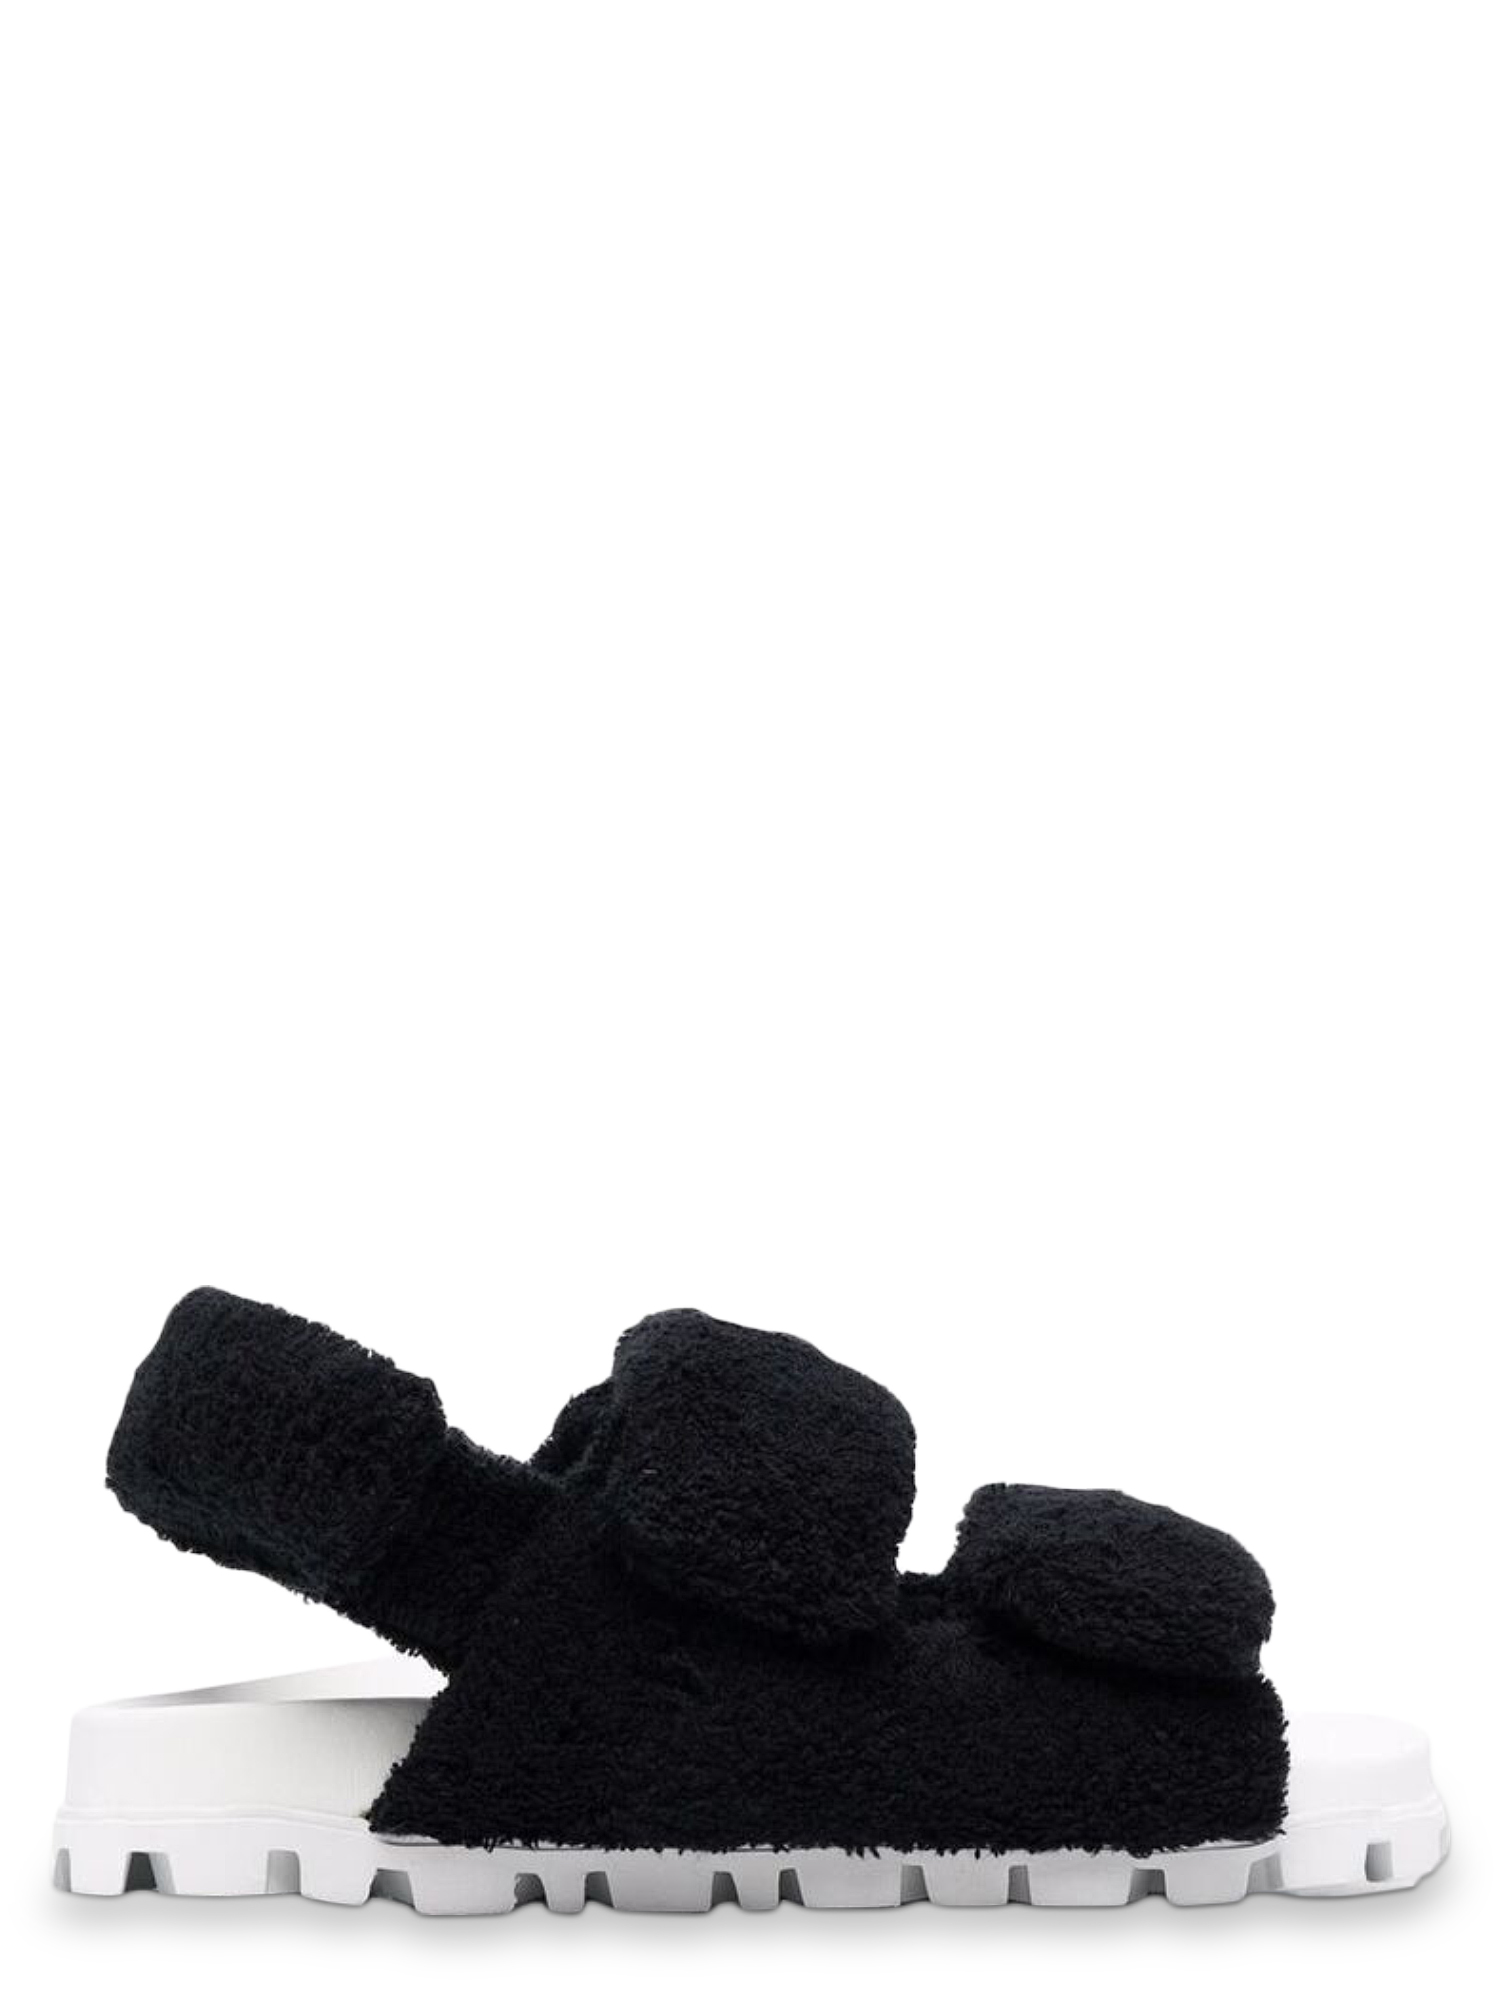 Sandales Pour Femme - Miu Miu - En Fabric Black - Taille: IT 38 - EU 38